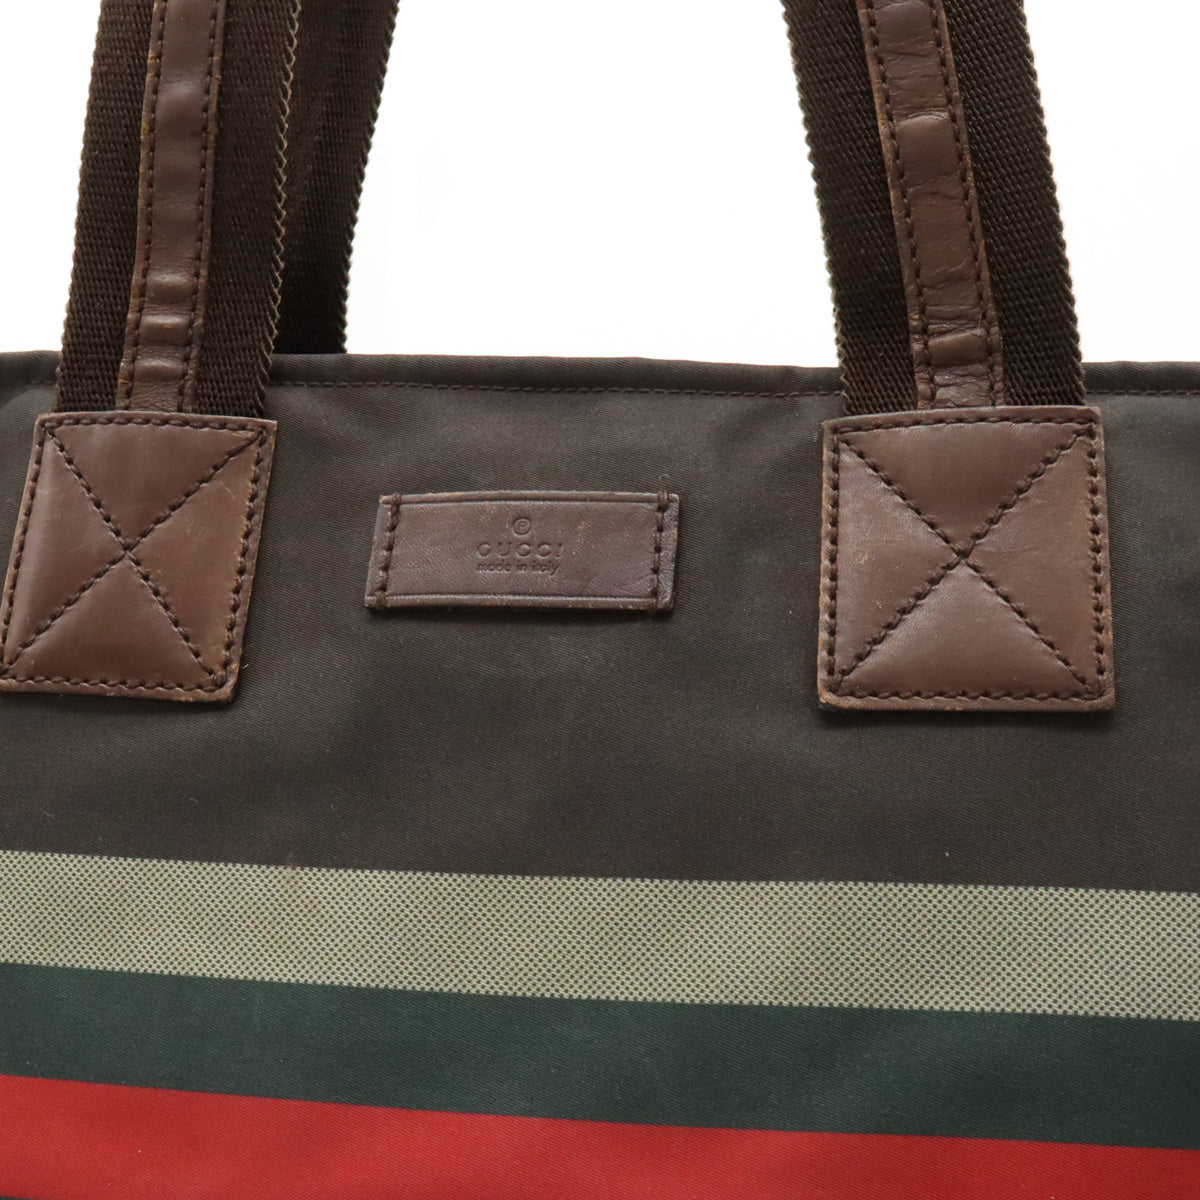 GUCCI Gucci Diamond Shellie Line  Bag Shoulder Bag Shoulder Bag Nylon Leather Brown Red Green 267922